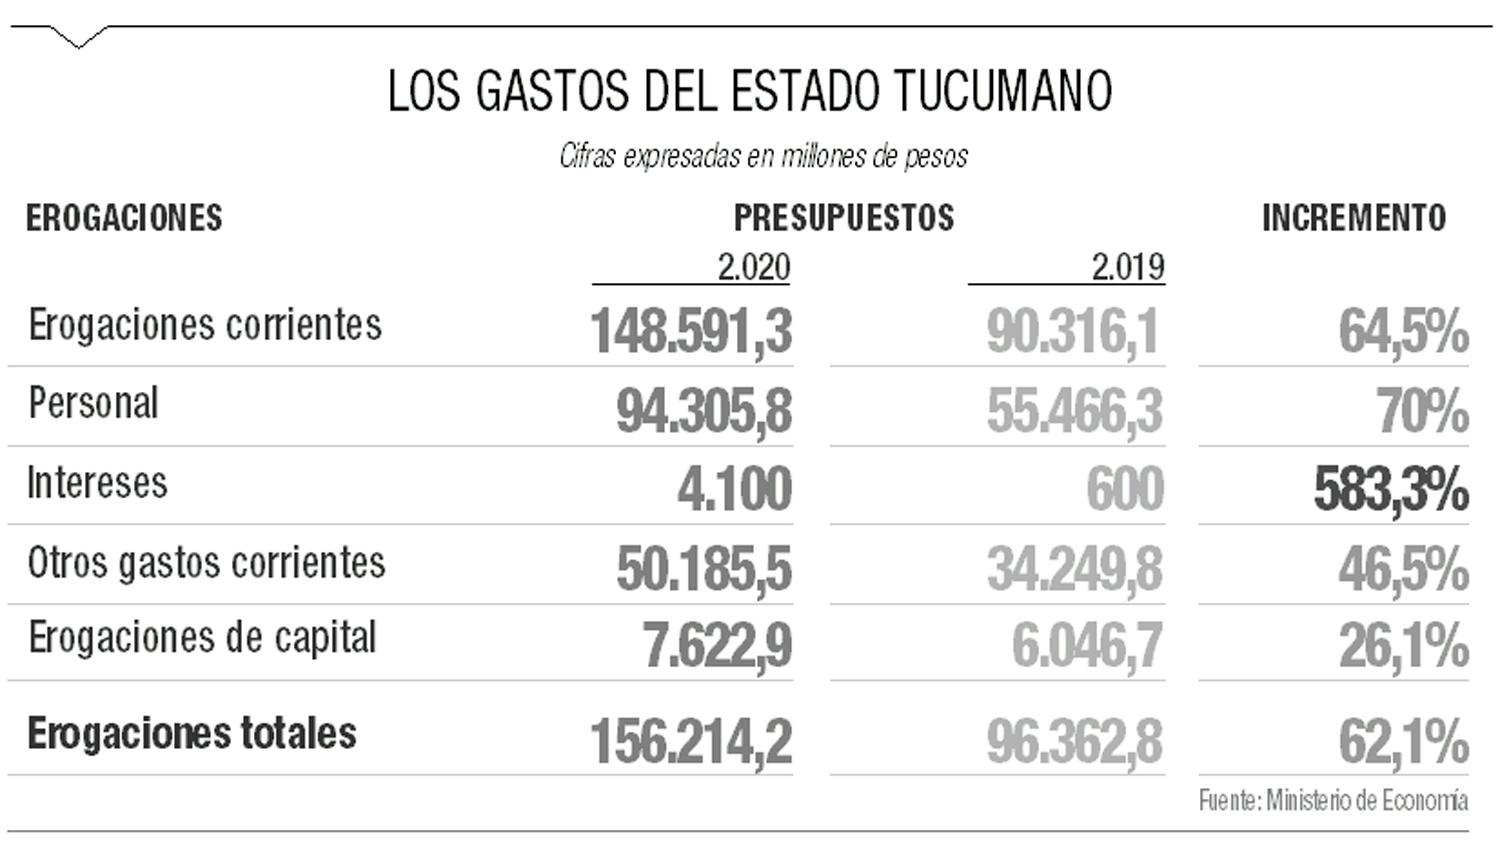 El gasto público de Tucumán aumentará por encima de la pauta inflacionaria durante 2020